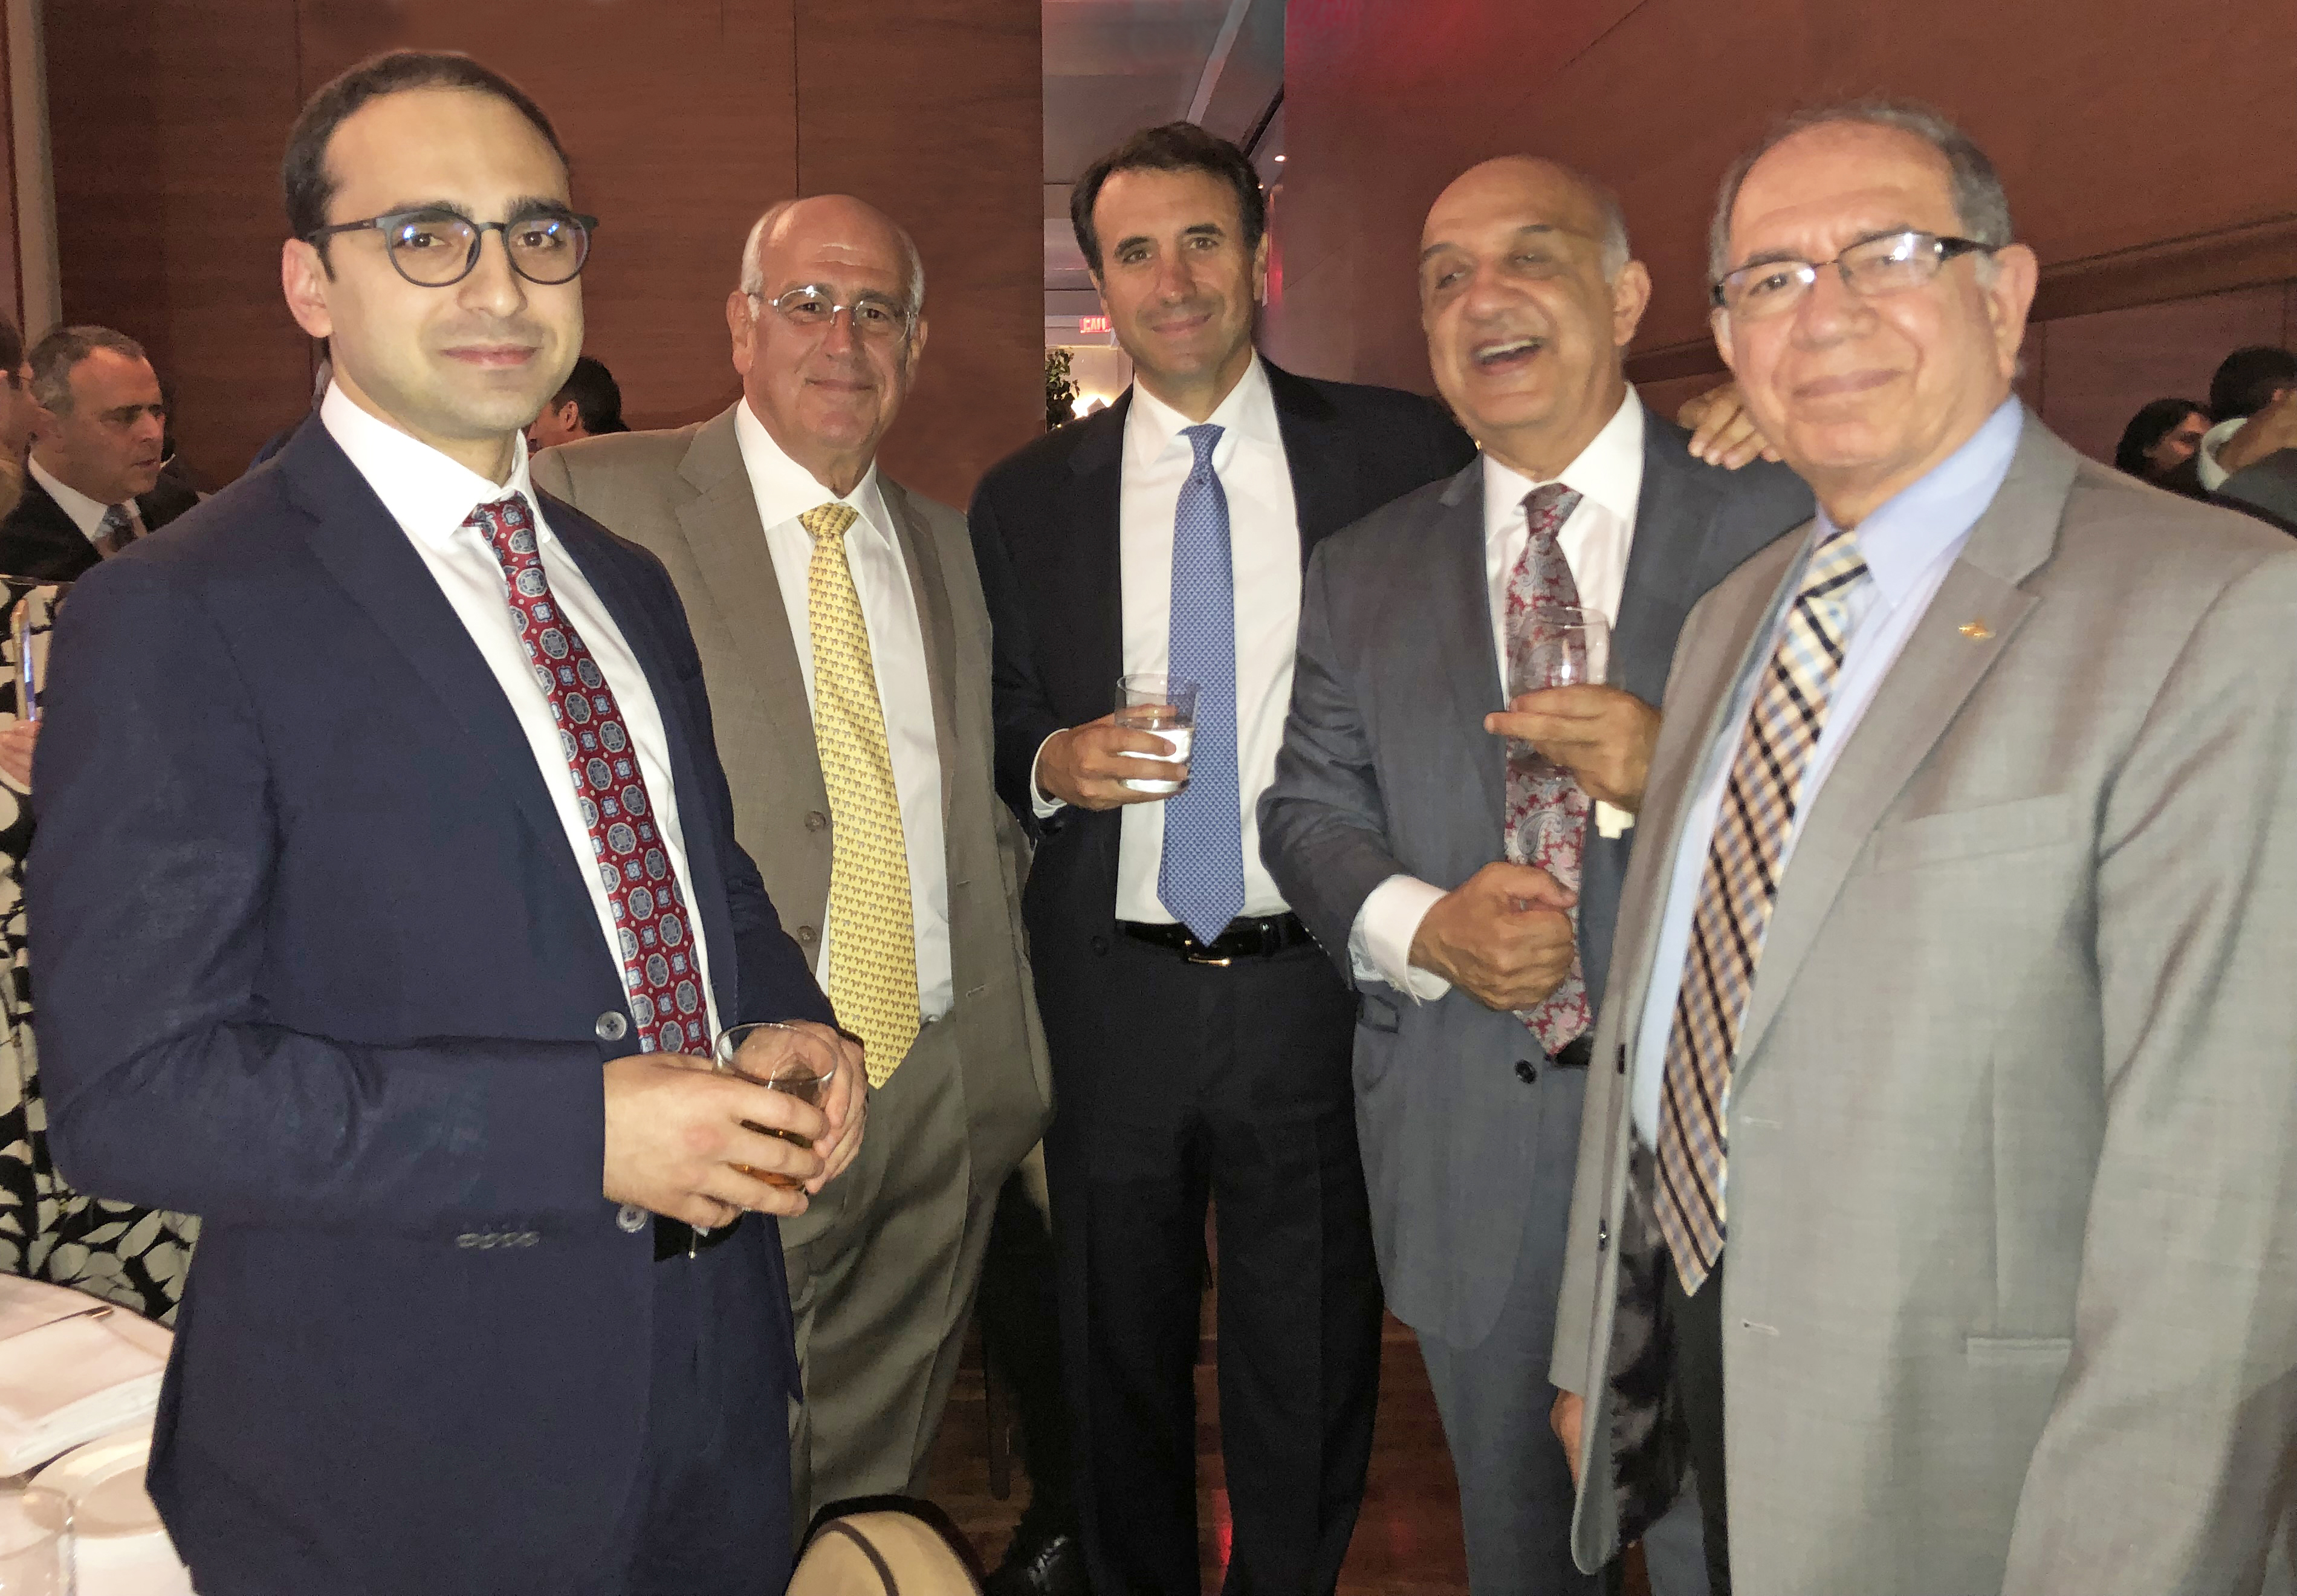 AGBU Hosts Dinner for Deputy Prime Minister of Armenia in New York